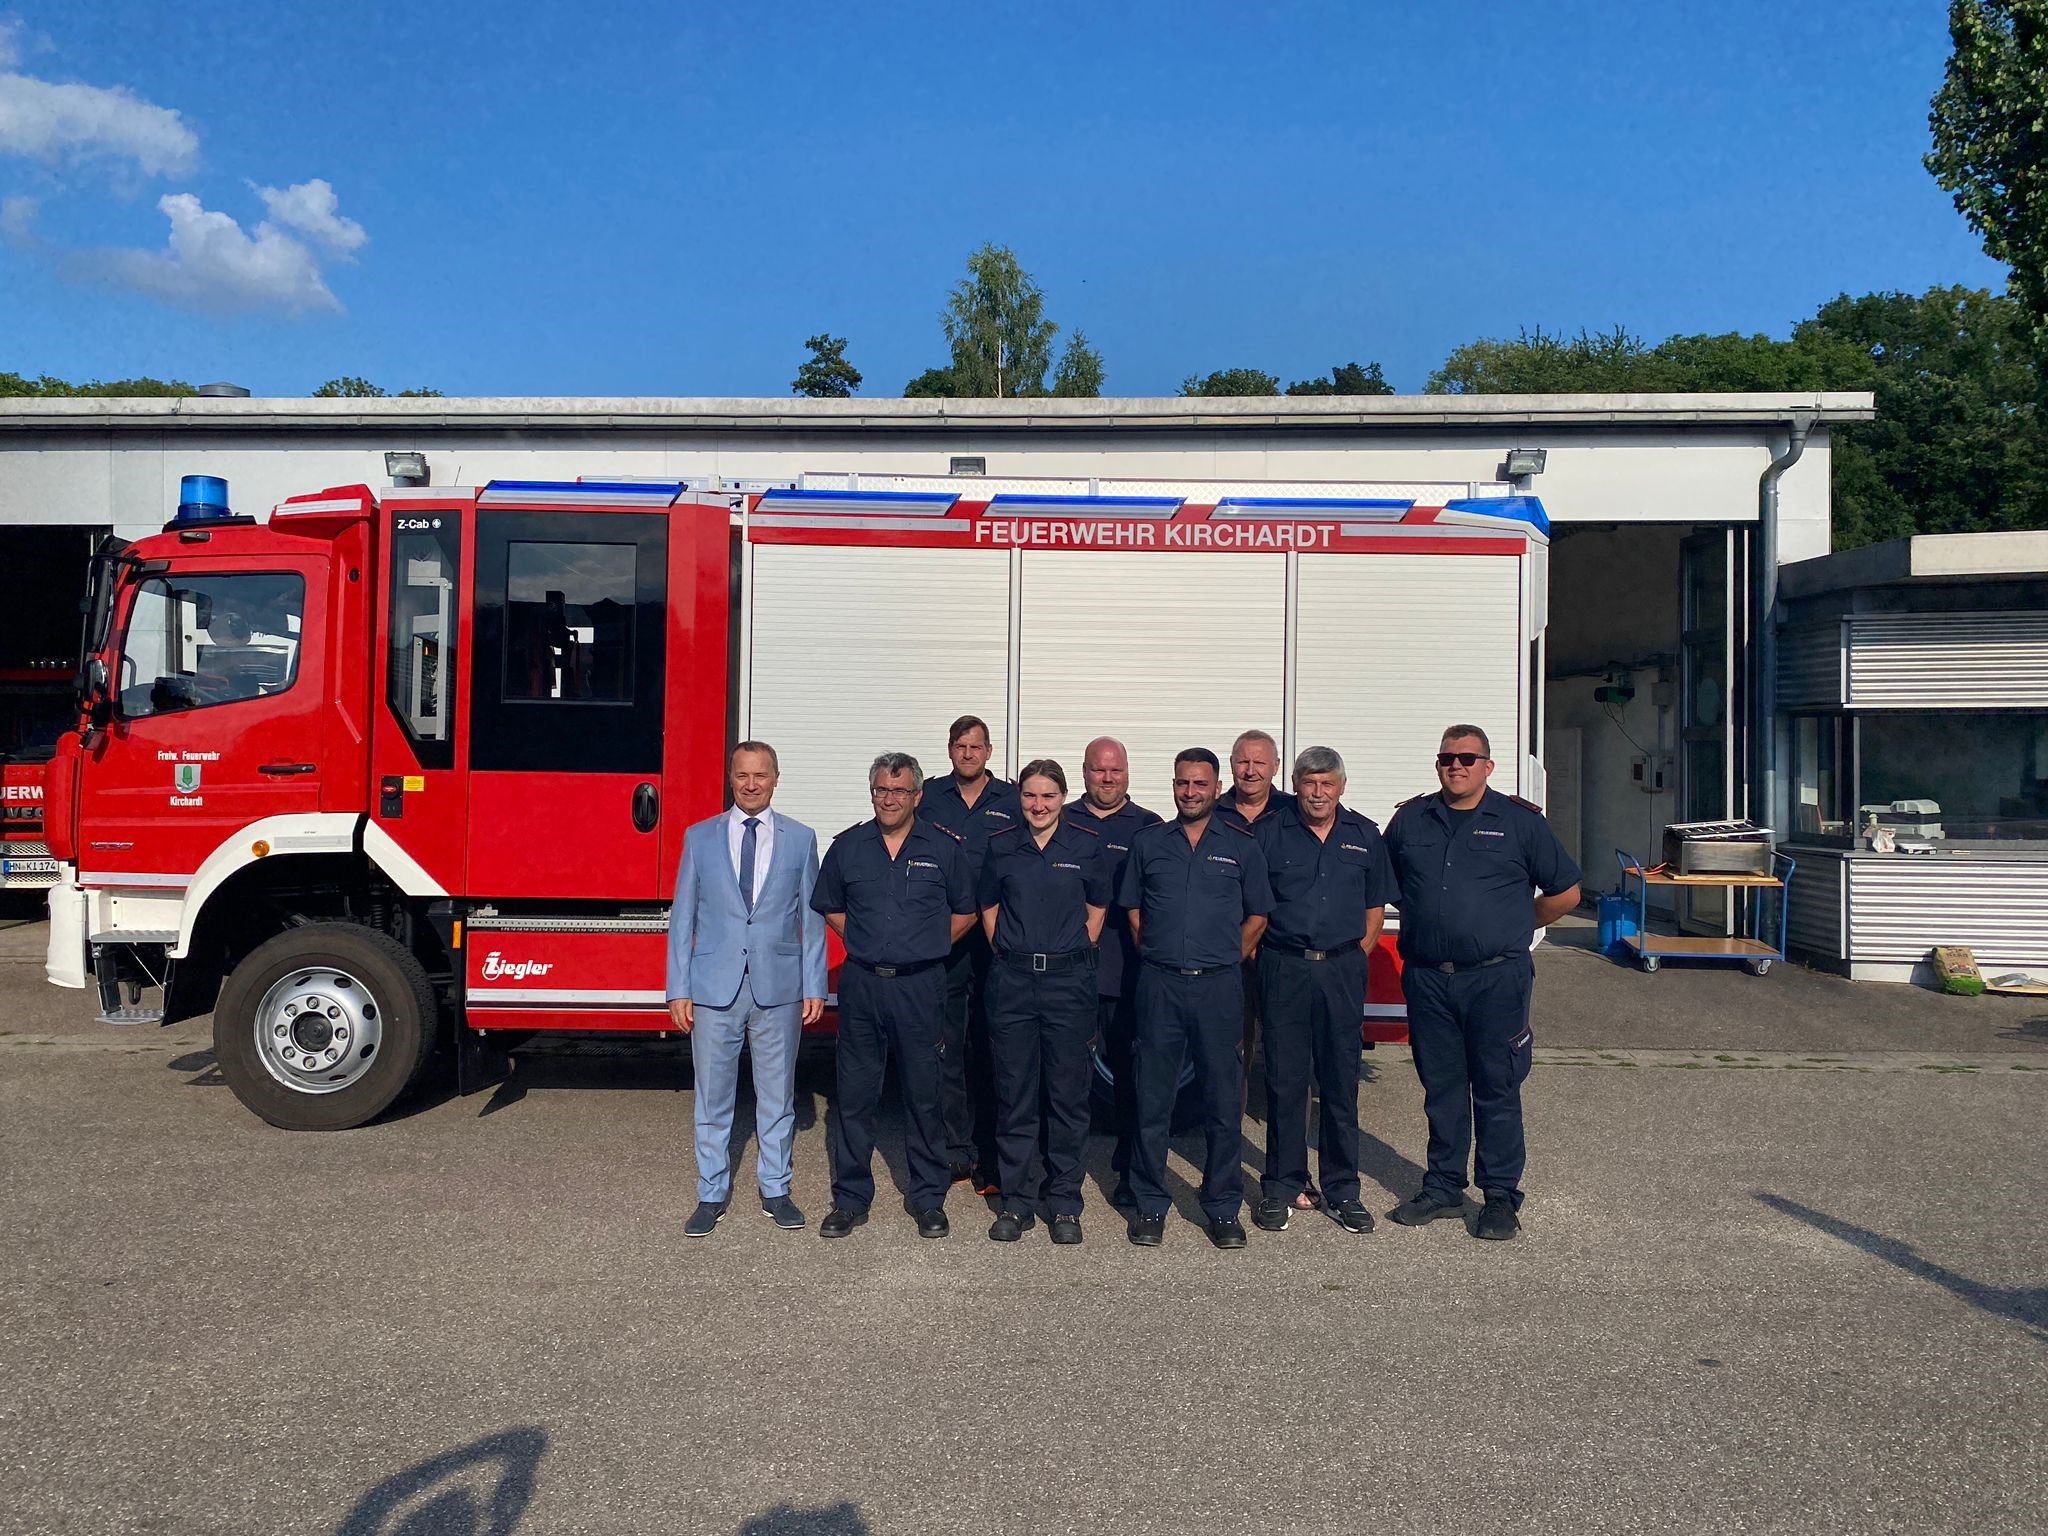  Vertreter der Freiwilligen Feuerwehr und Bürgermeister Kreiter voir den neuen Feuerwehrfahrzeug - das Bild wird mit Klick vergrößert 